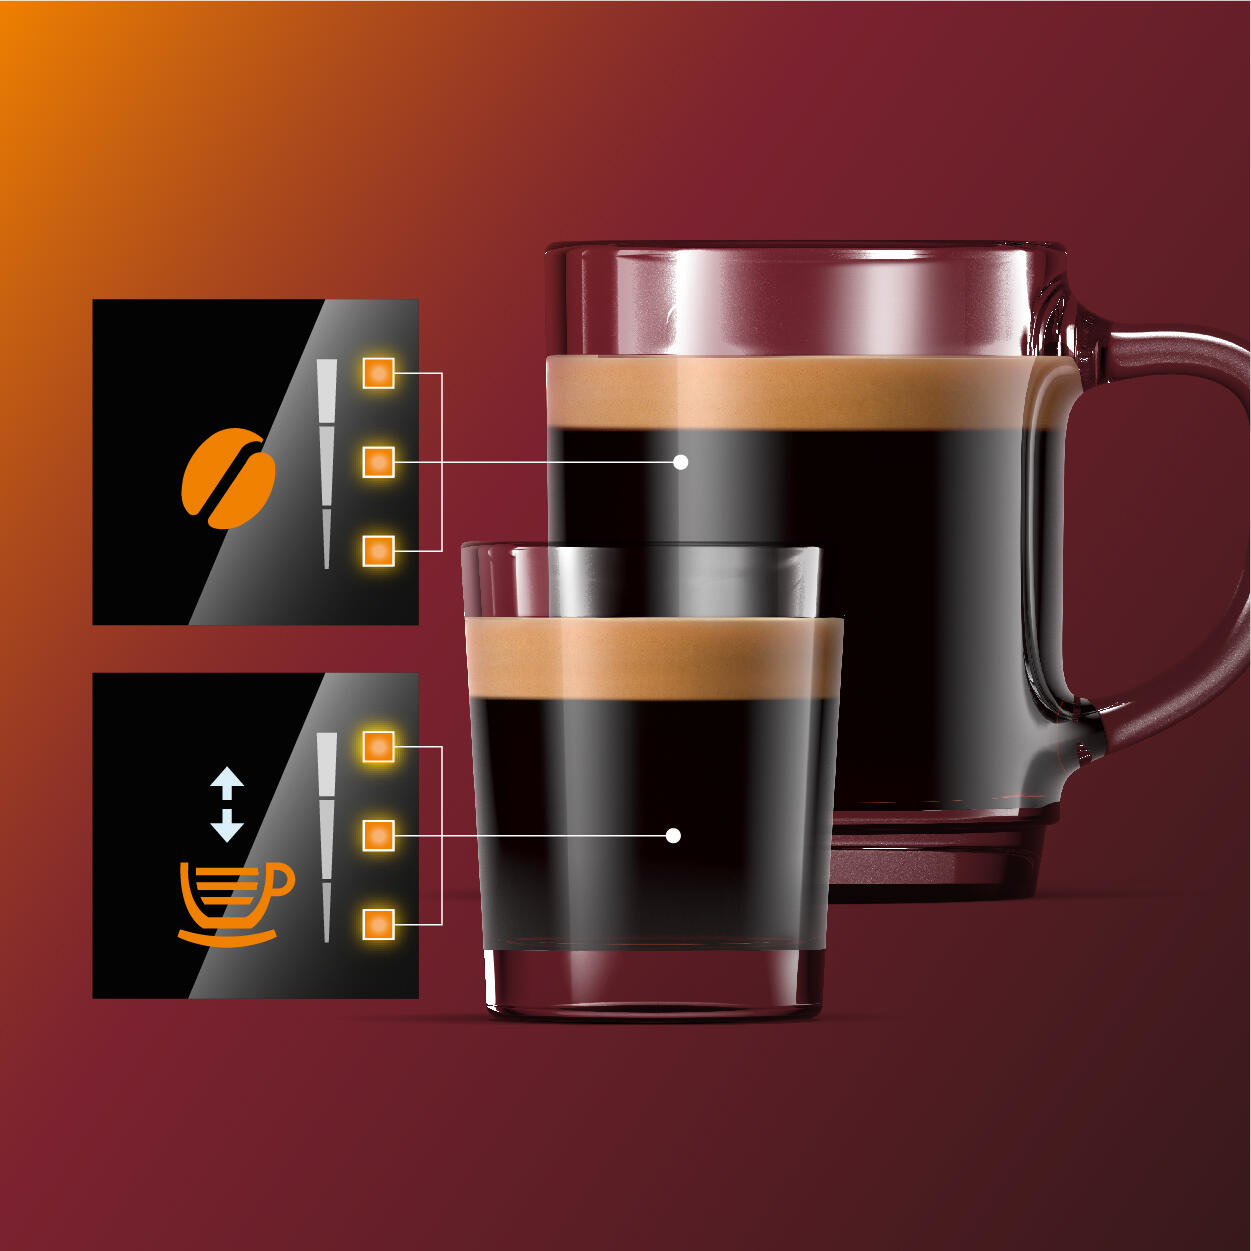 Macchina per caffè Philips 2200 series 2 bevande, macchina da automatica, 1.8L , macine 100% ceramica EP2220/10 [EP2220/10]